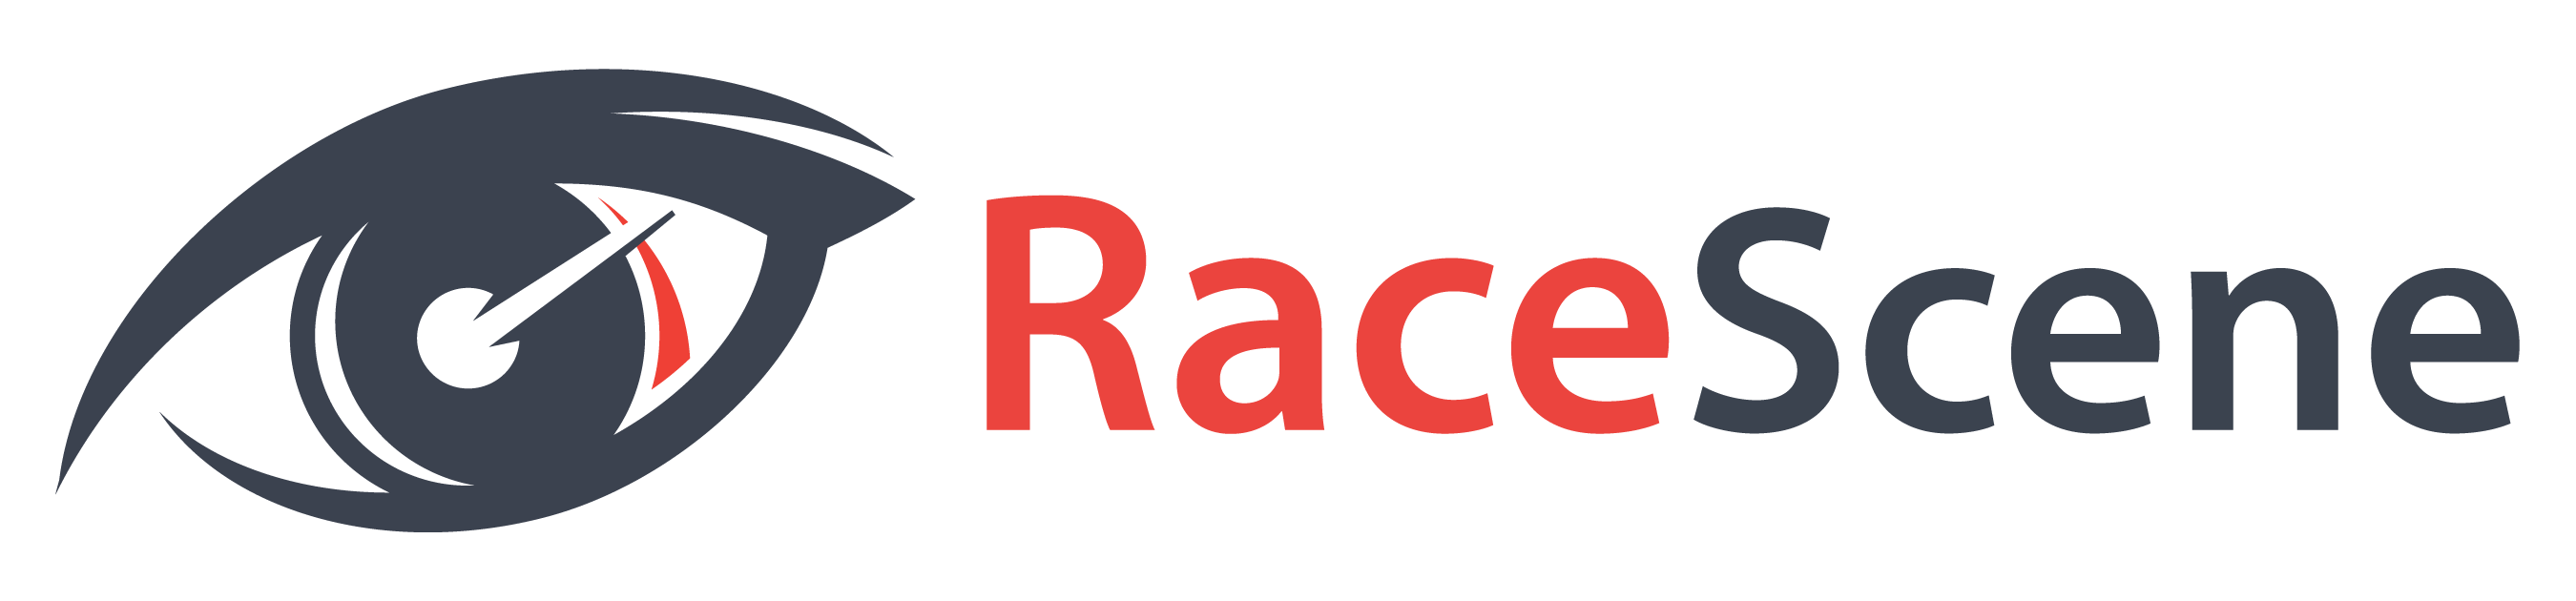 RaceScene